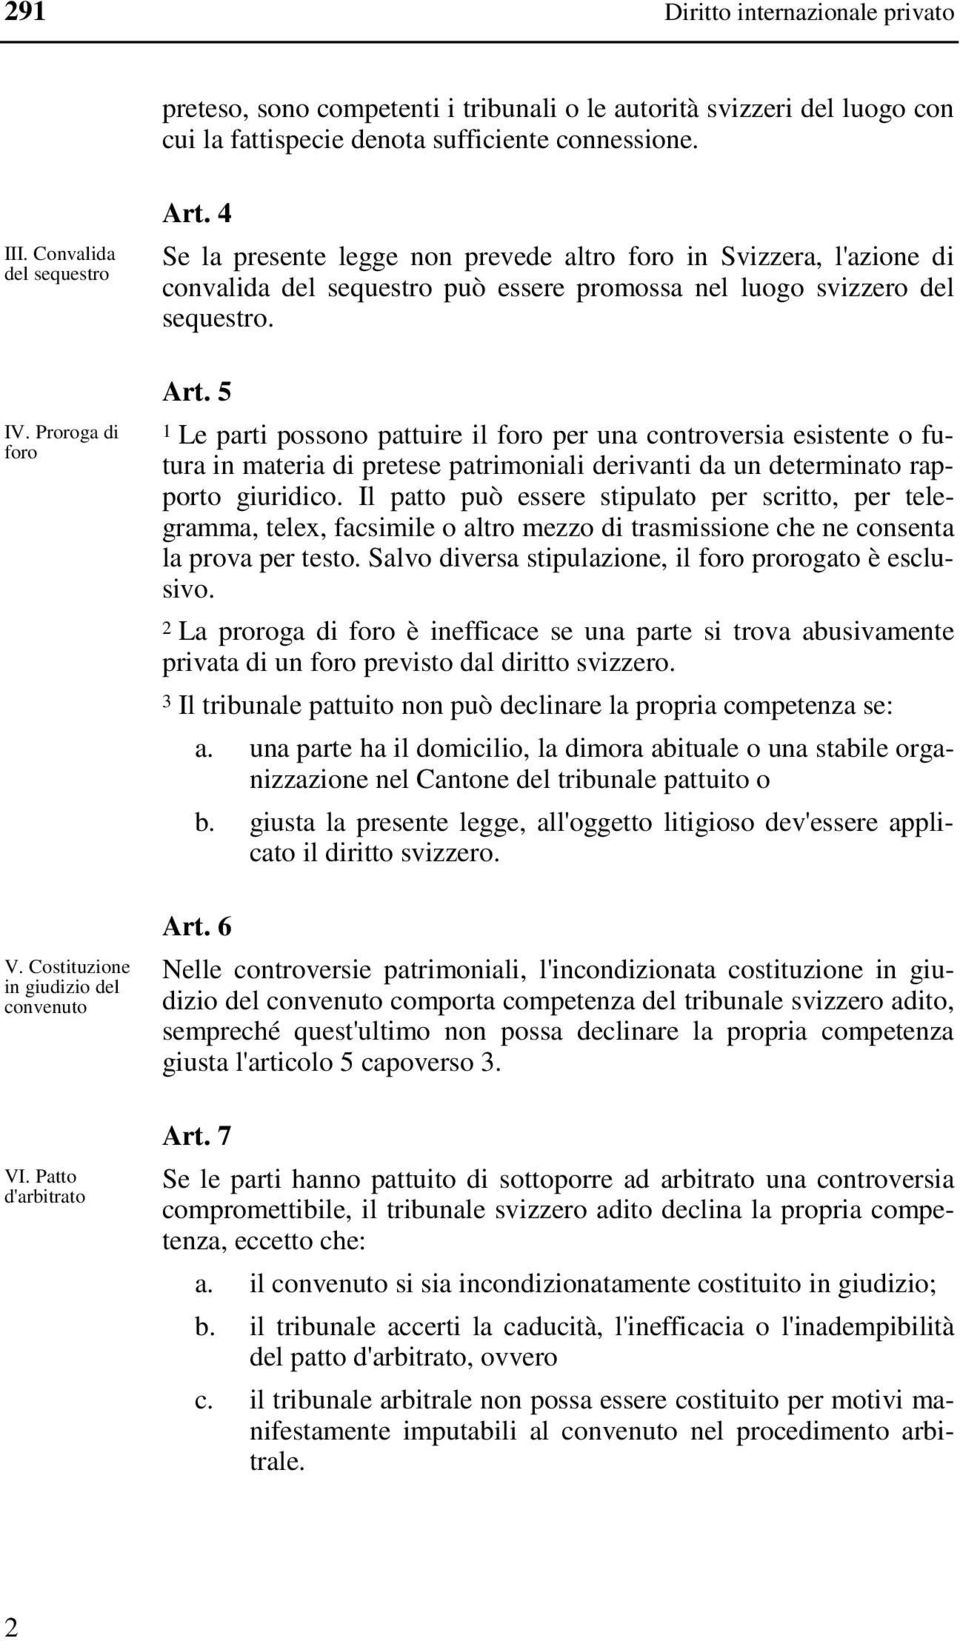 4 Se la presente legge non prevede altro foro in Svizzera, l'azione di convalida del sequestro può essere promossa nel luogo svizzero del sequestro. Art.